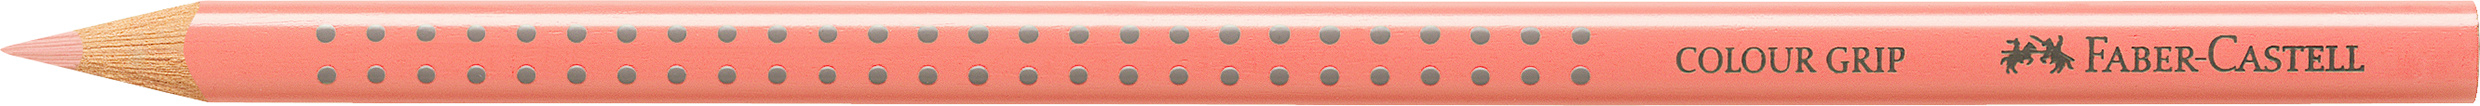 FABER-CASTELL Crayon de couleur Colour Grip 112417 beige